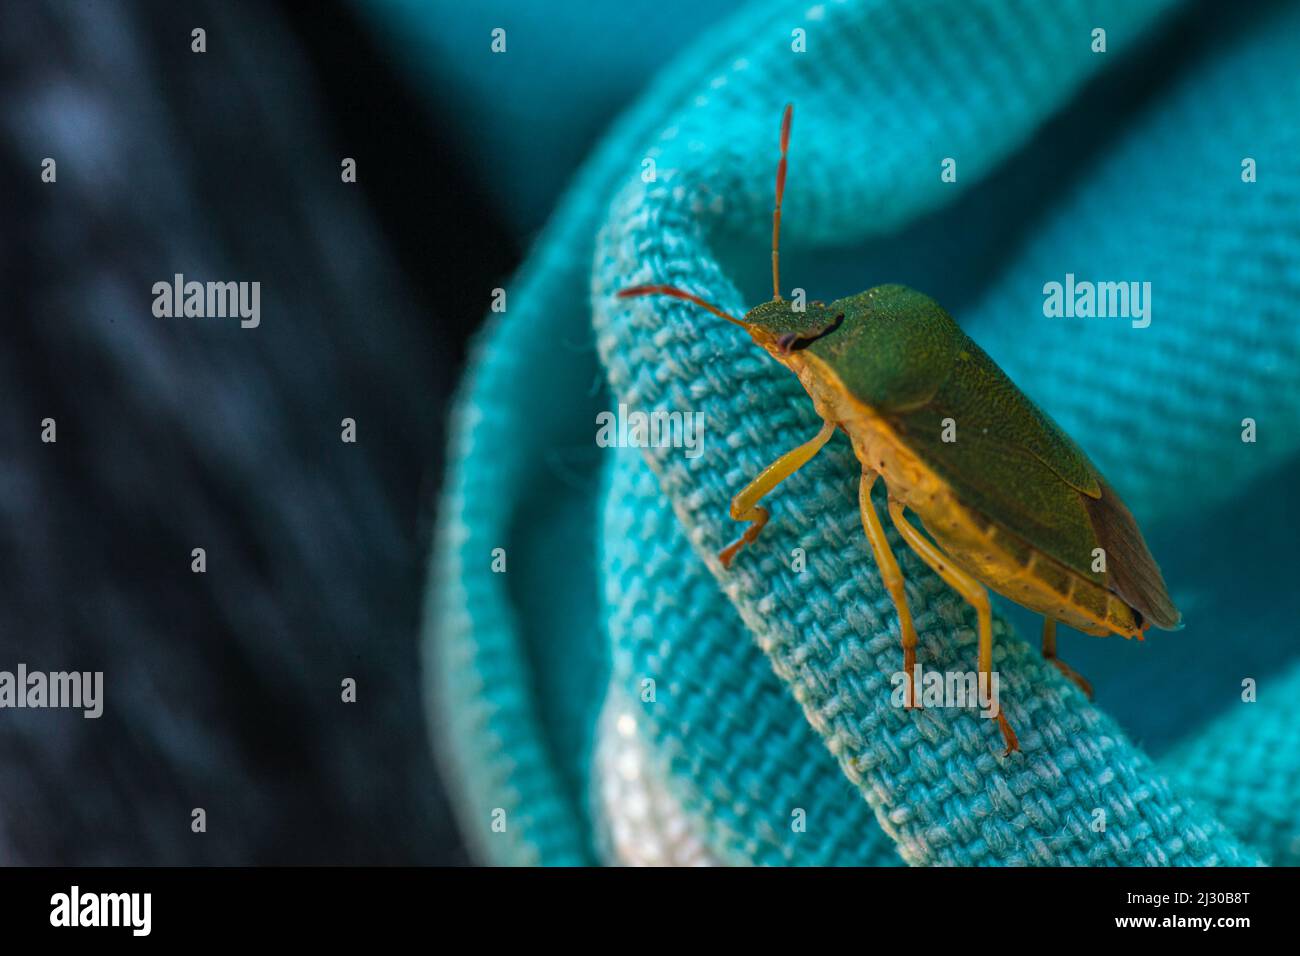 Vue macroscopique d'une punaise verte ponctuée Stock Photo - Alamy